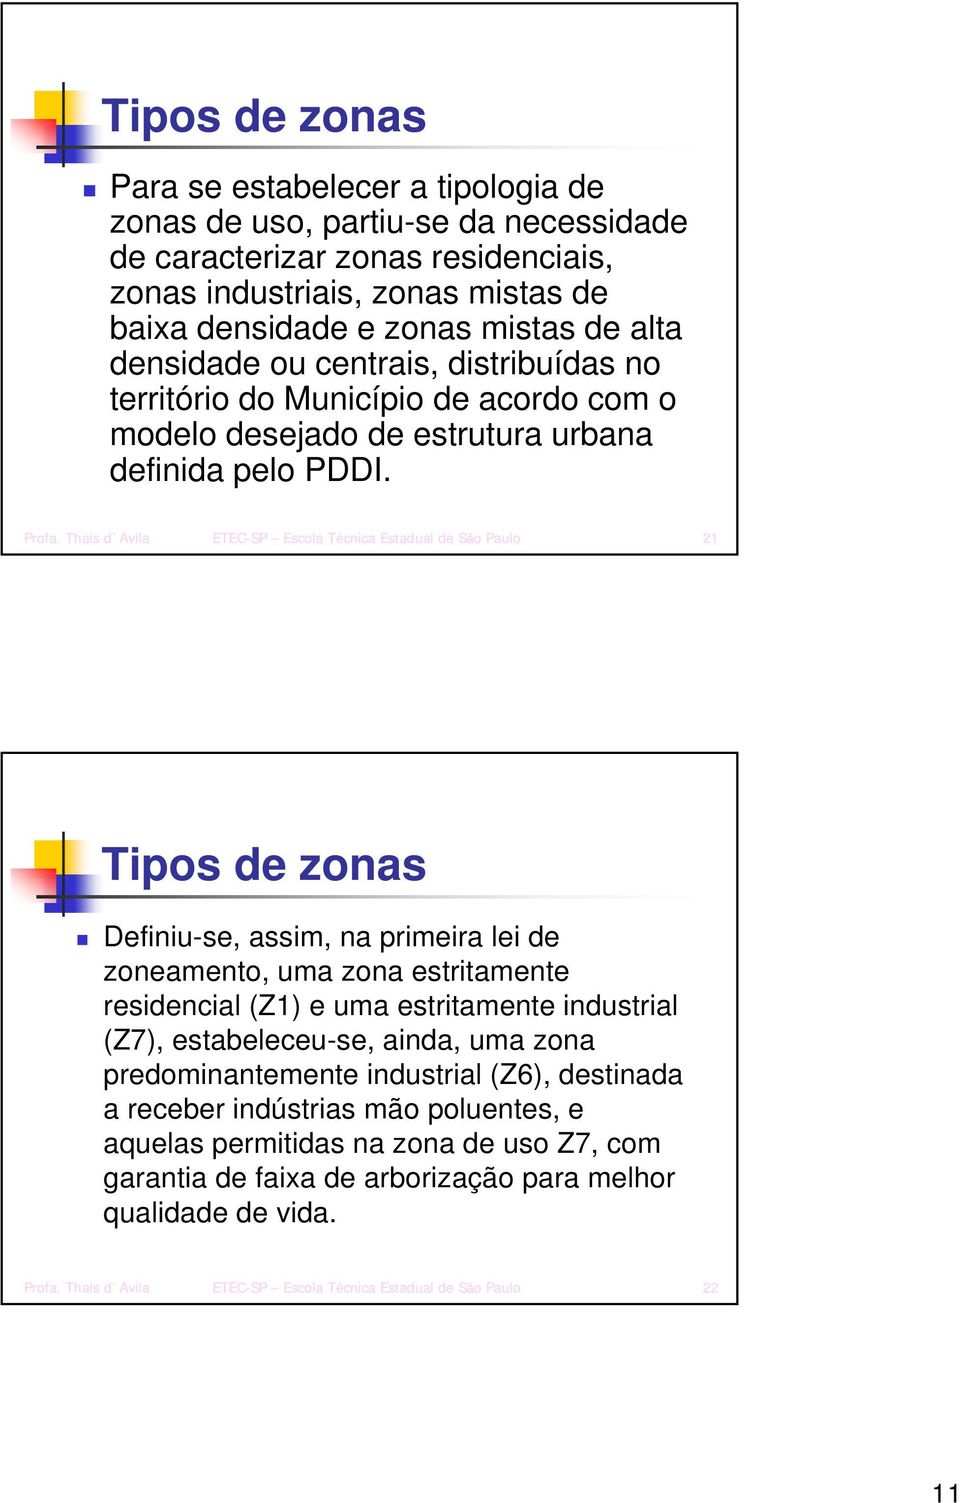 Thais d Avila ETEC-SP Escola Técnica Estadual de São Paulo 21 Tipos de zonas Definiu-se, assim, na primeira lei de zoneamento, uma zona estritamente residencial (Z1) e uma estritamente industrial